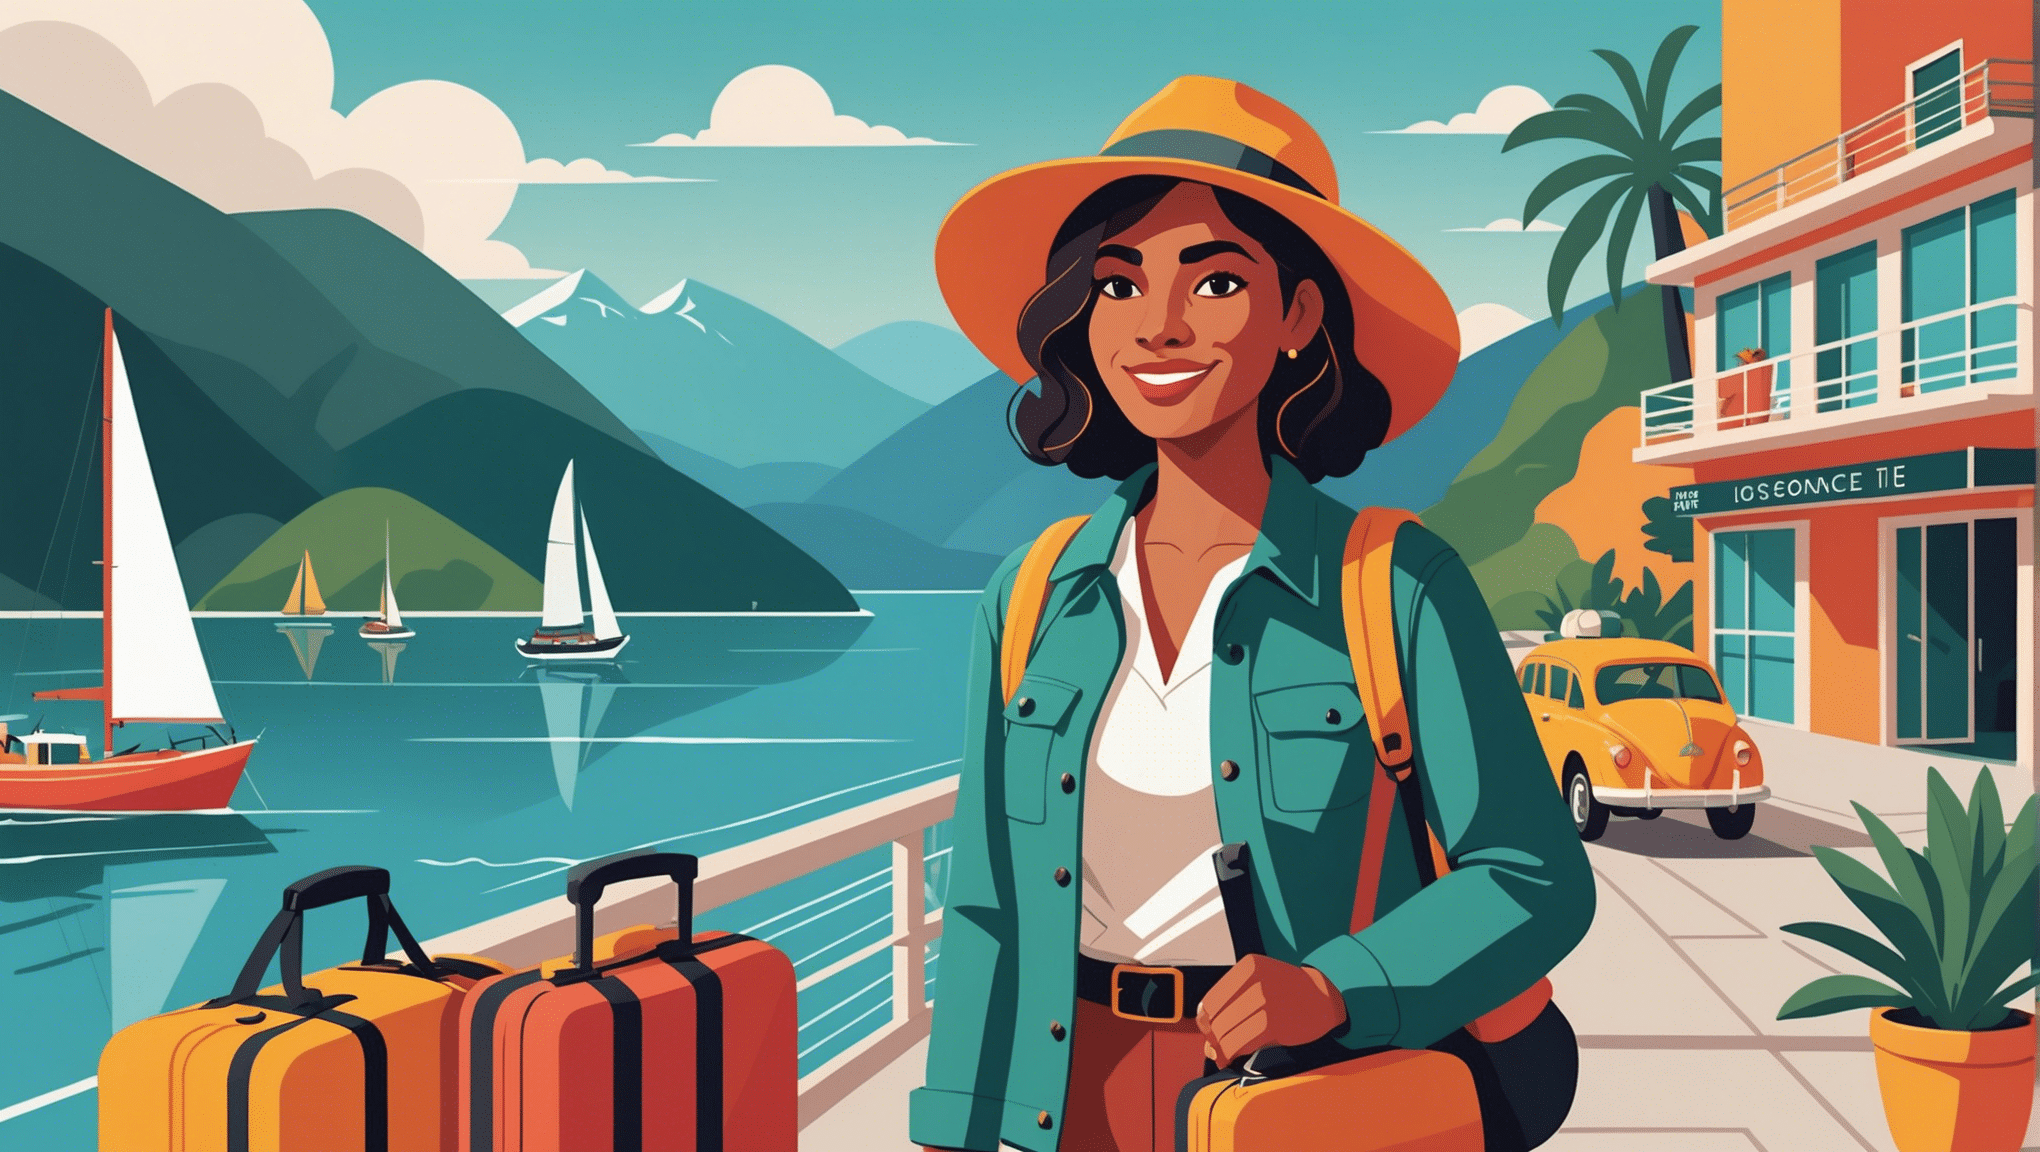 aprenda dicas essenciais de segurança para viajar sozinha como mulher e aproveite ao máximo sua experiência de viagem.